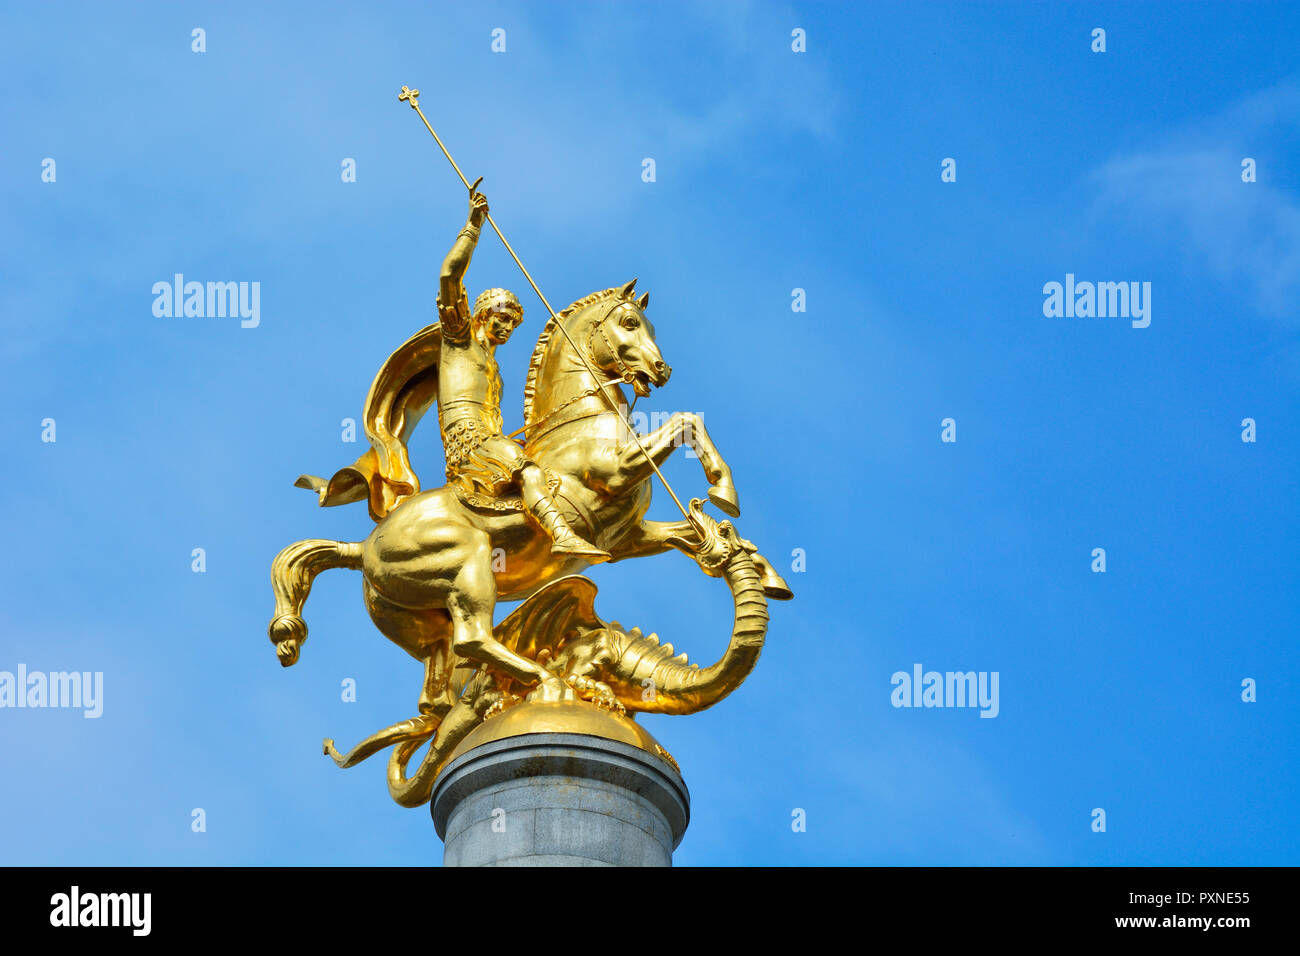 Vergoldete Statue des Heiligen Georg und dem Drachen, von georgischen Bildhauer Surab Zereteli. Platz der Freiheit, Tiflis. Georgien, Kaukasus Stockfoto